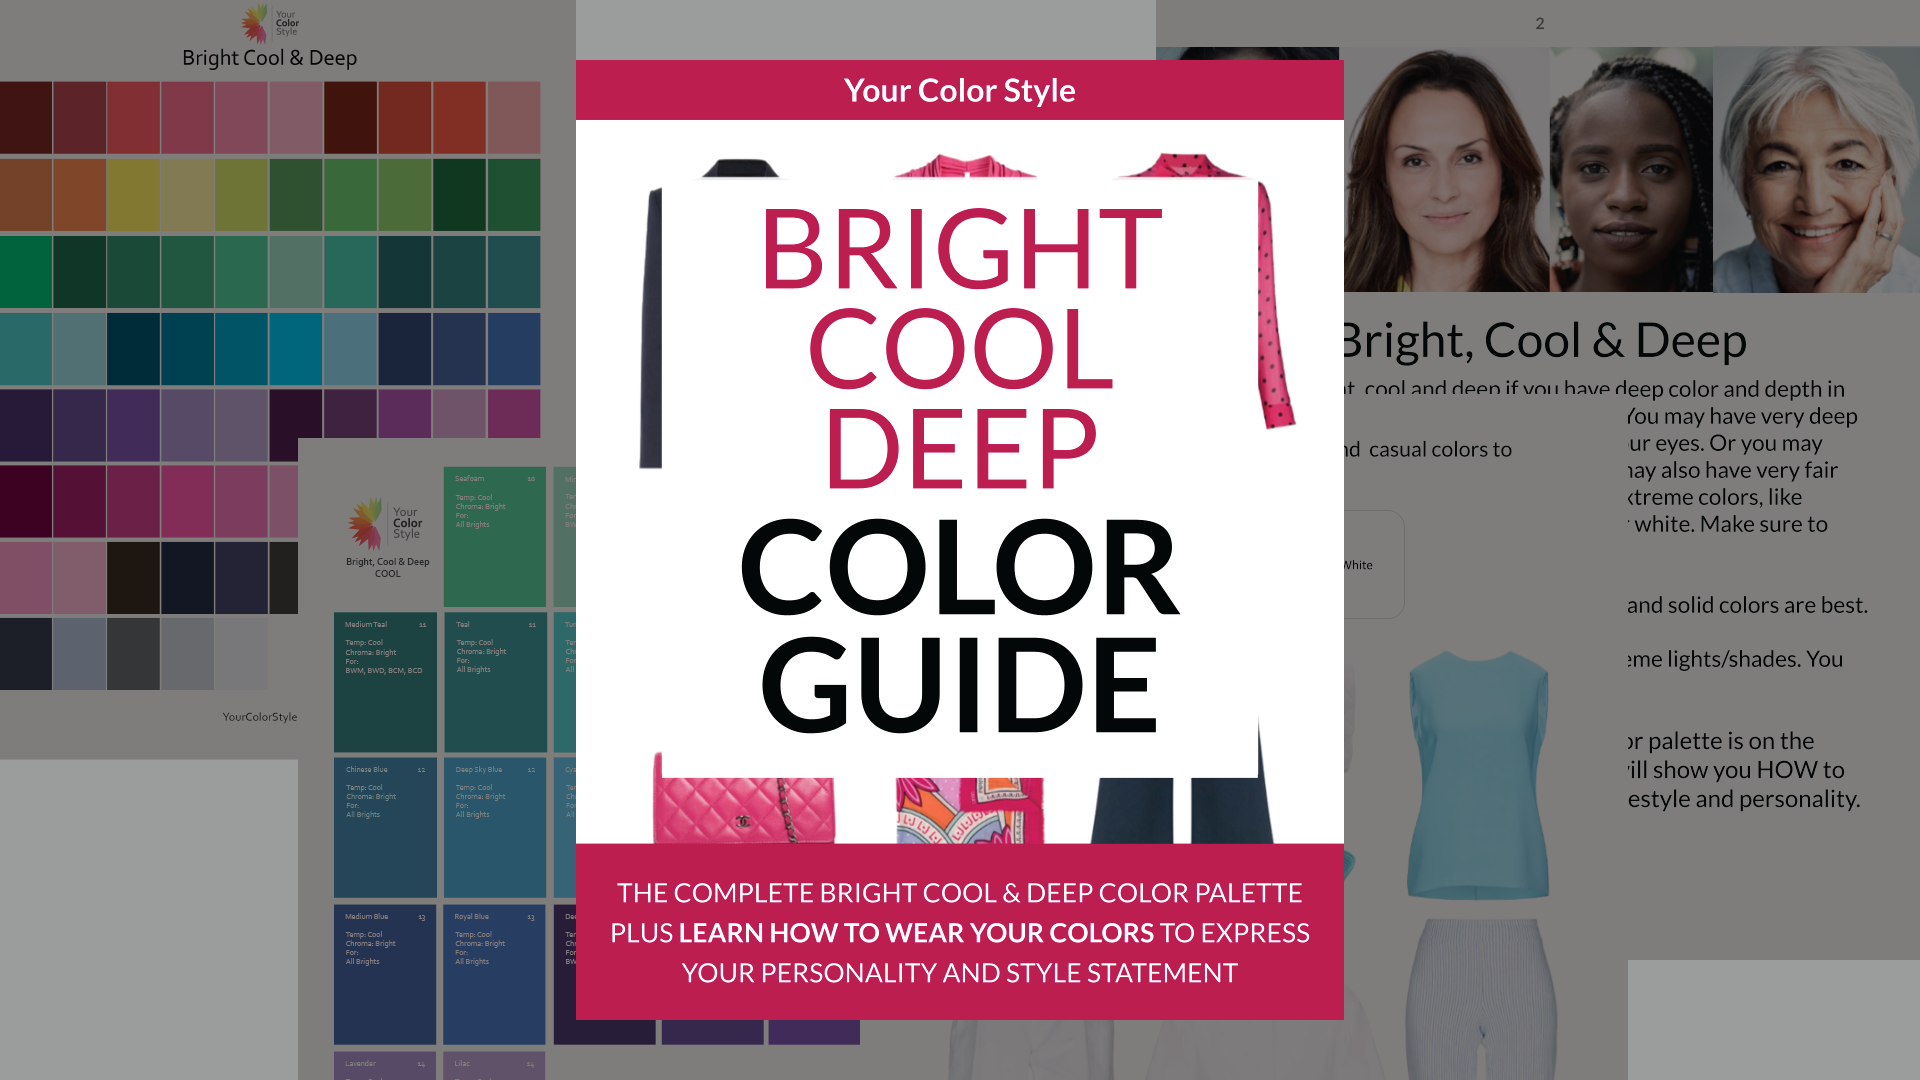 Bright Warm Light Color Guide